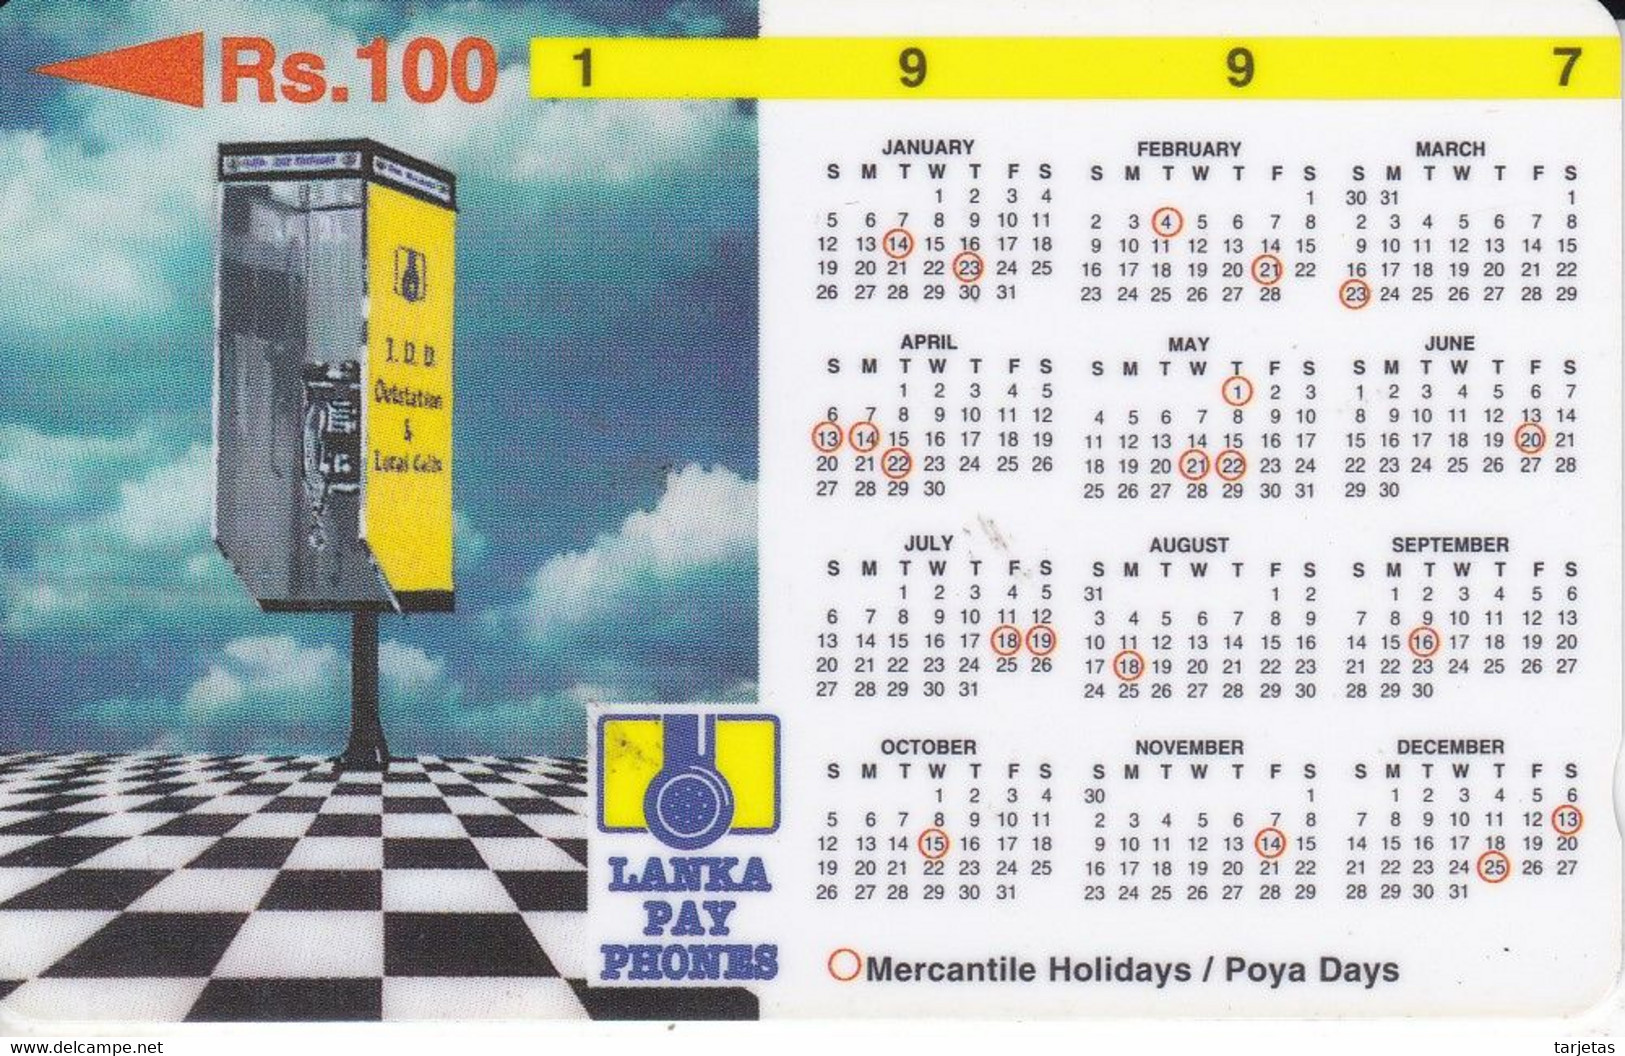 (31SRLB) TARJETA DE SRY LANKA DE Rs.100 CALENDARIO 1997 - Sri Lanka (Ceylon)